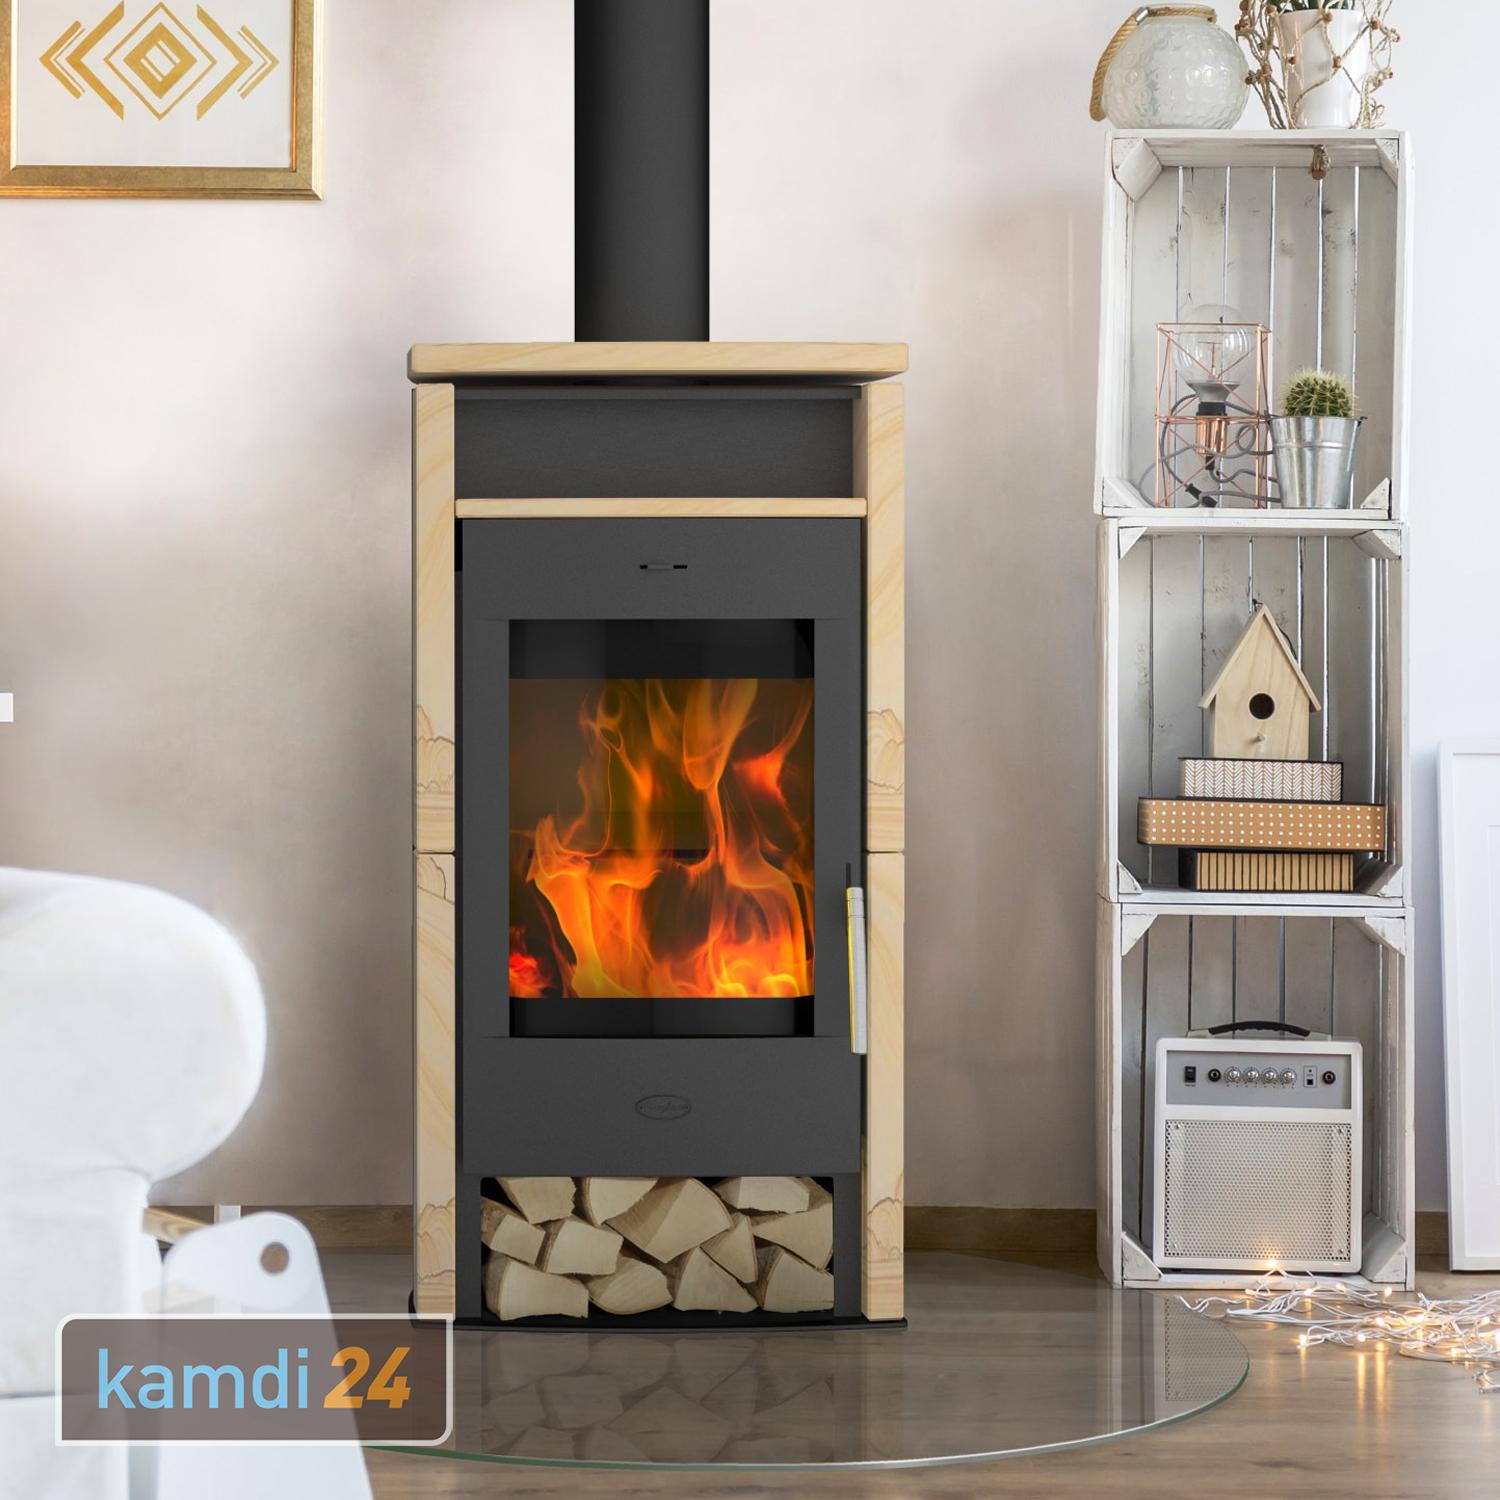 Schwarz Santiago Fireplace Kaminofen kamdi24-Shop kaufen | | Stahl Sandstein im